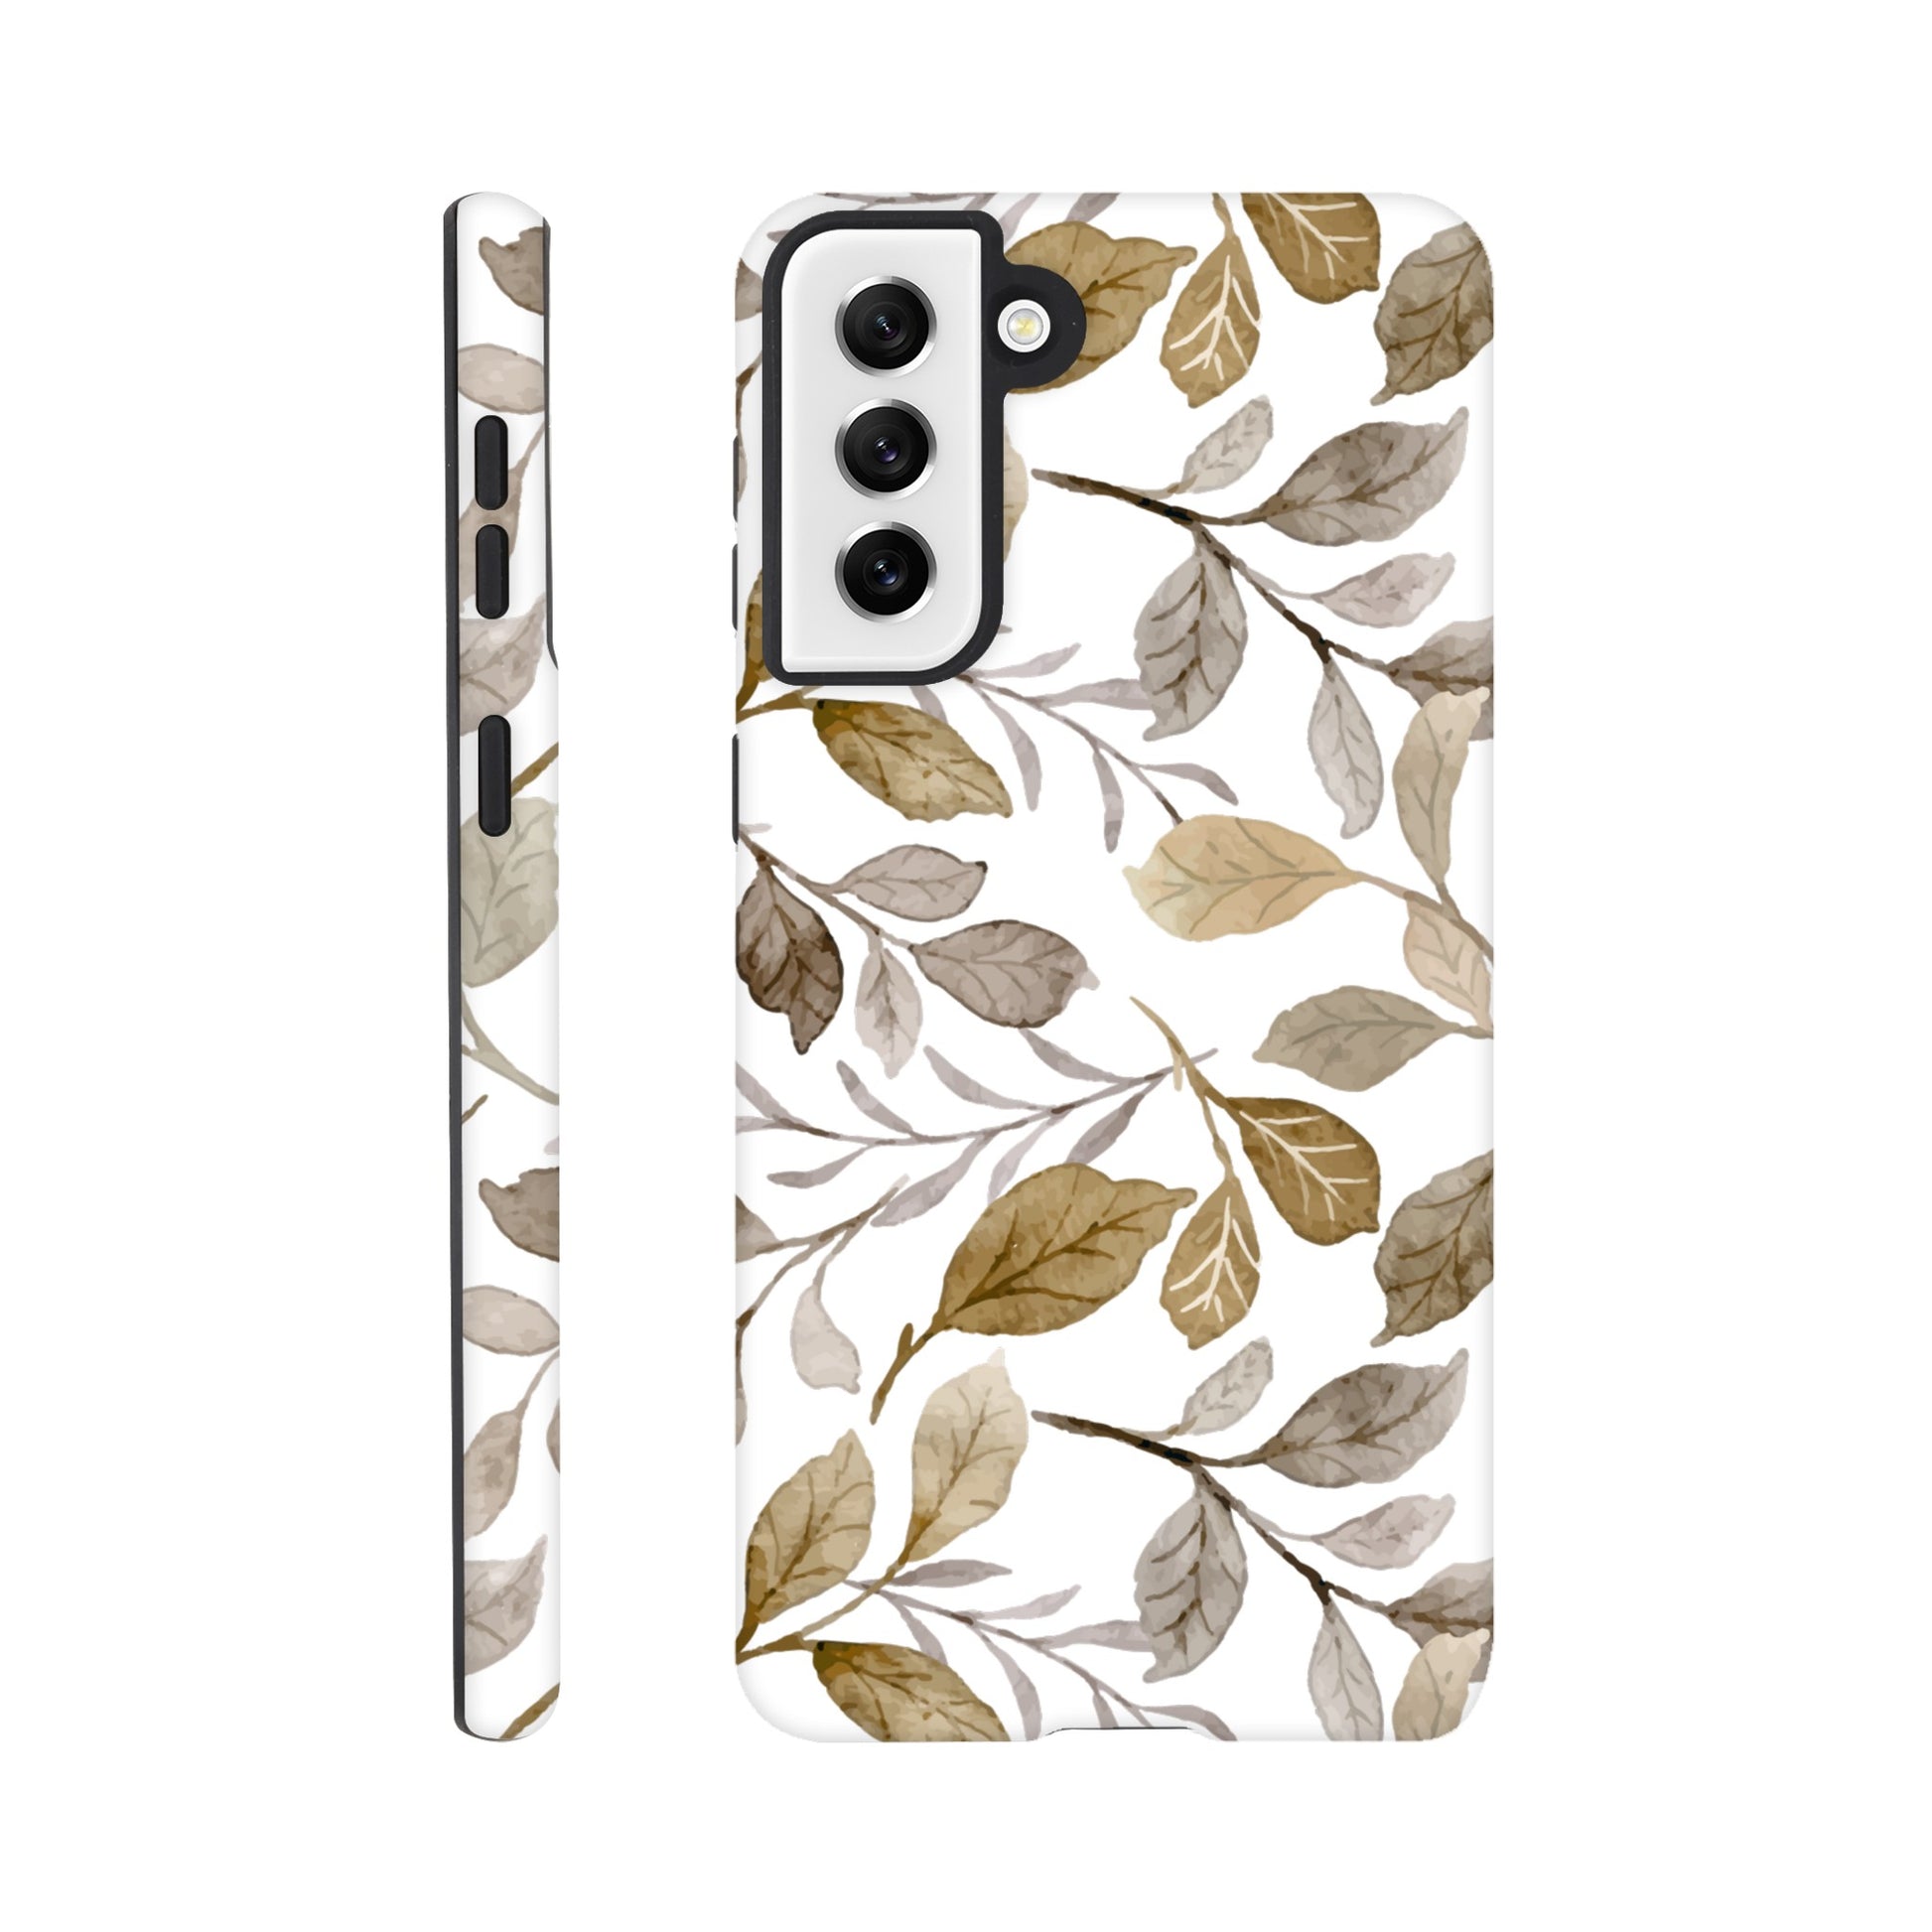 Autumn Leaves - Phone Tough Case Galaxy S21 Plus Phone Case Plants